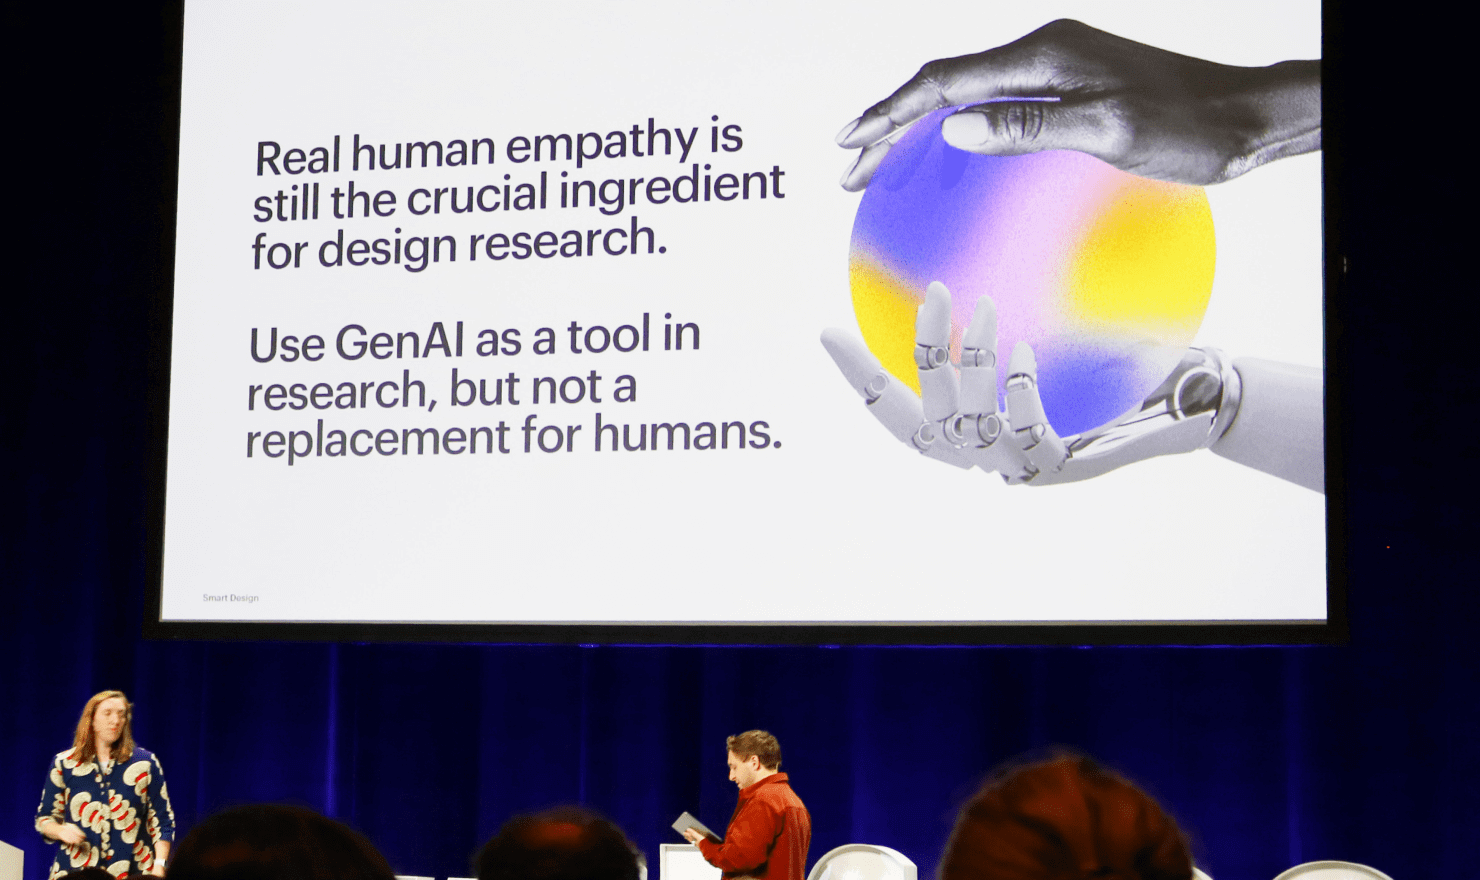 画像：Cameron Hanson 氏のトーク中のスライド “Real human empathy is still the crucial ingredient for design research. Use GenAI as a tool in research, but not a replacement for humans.”